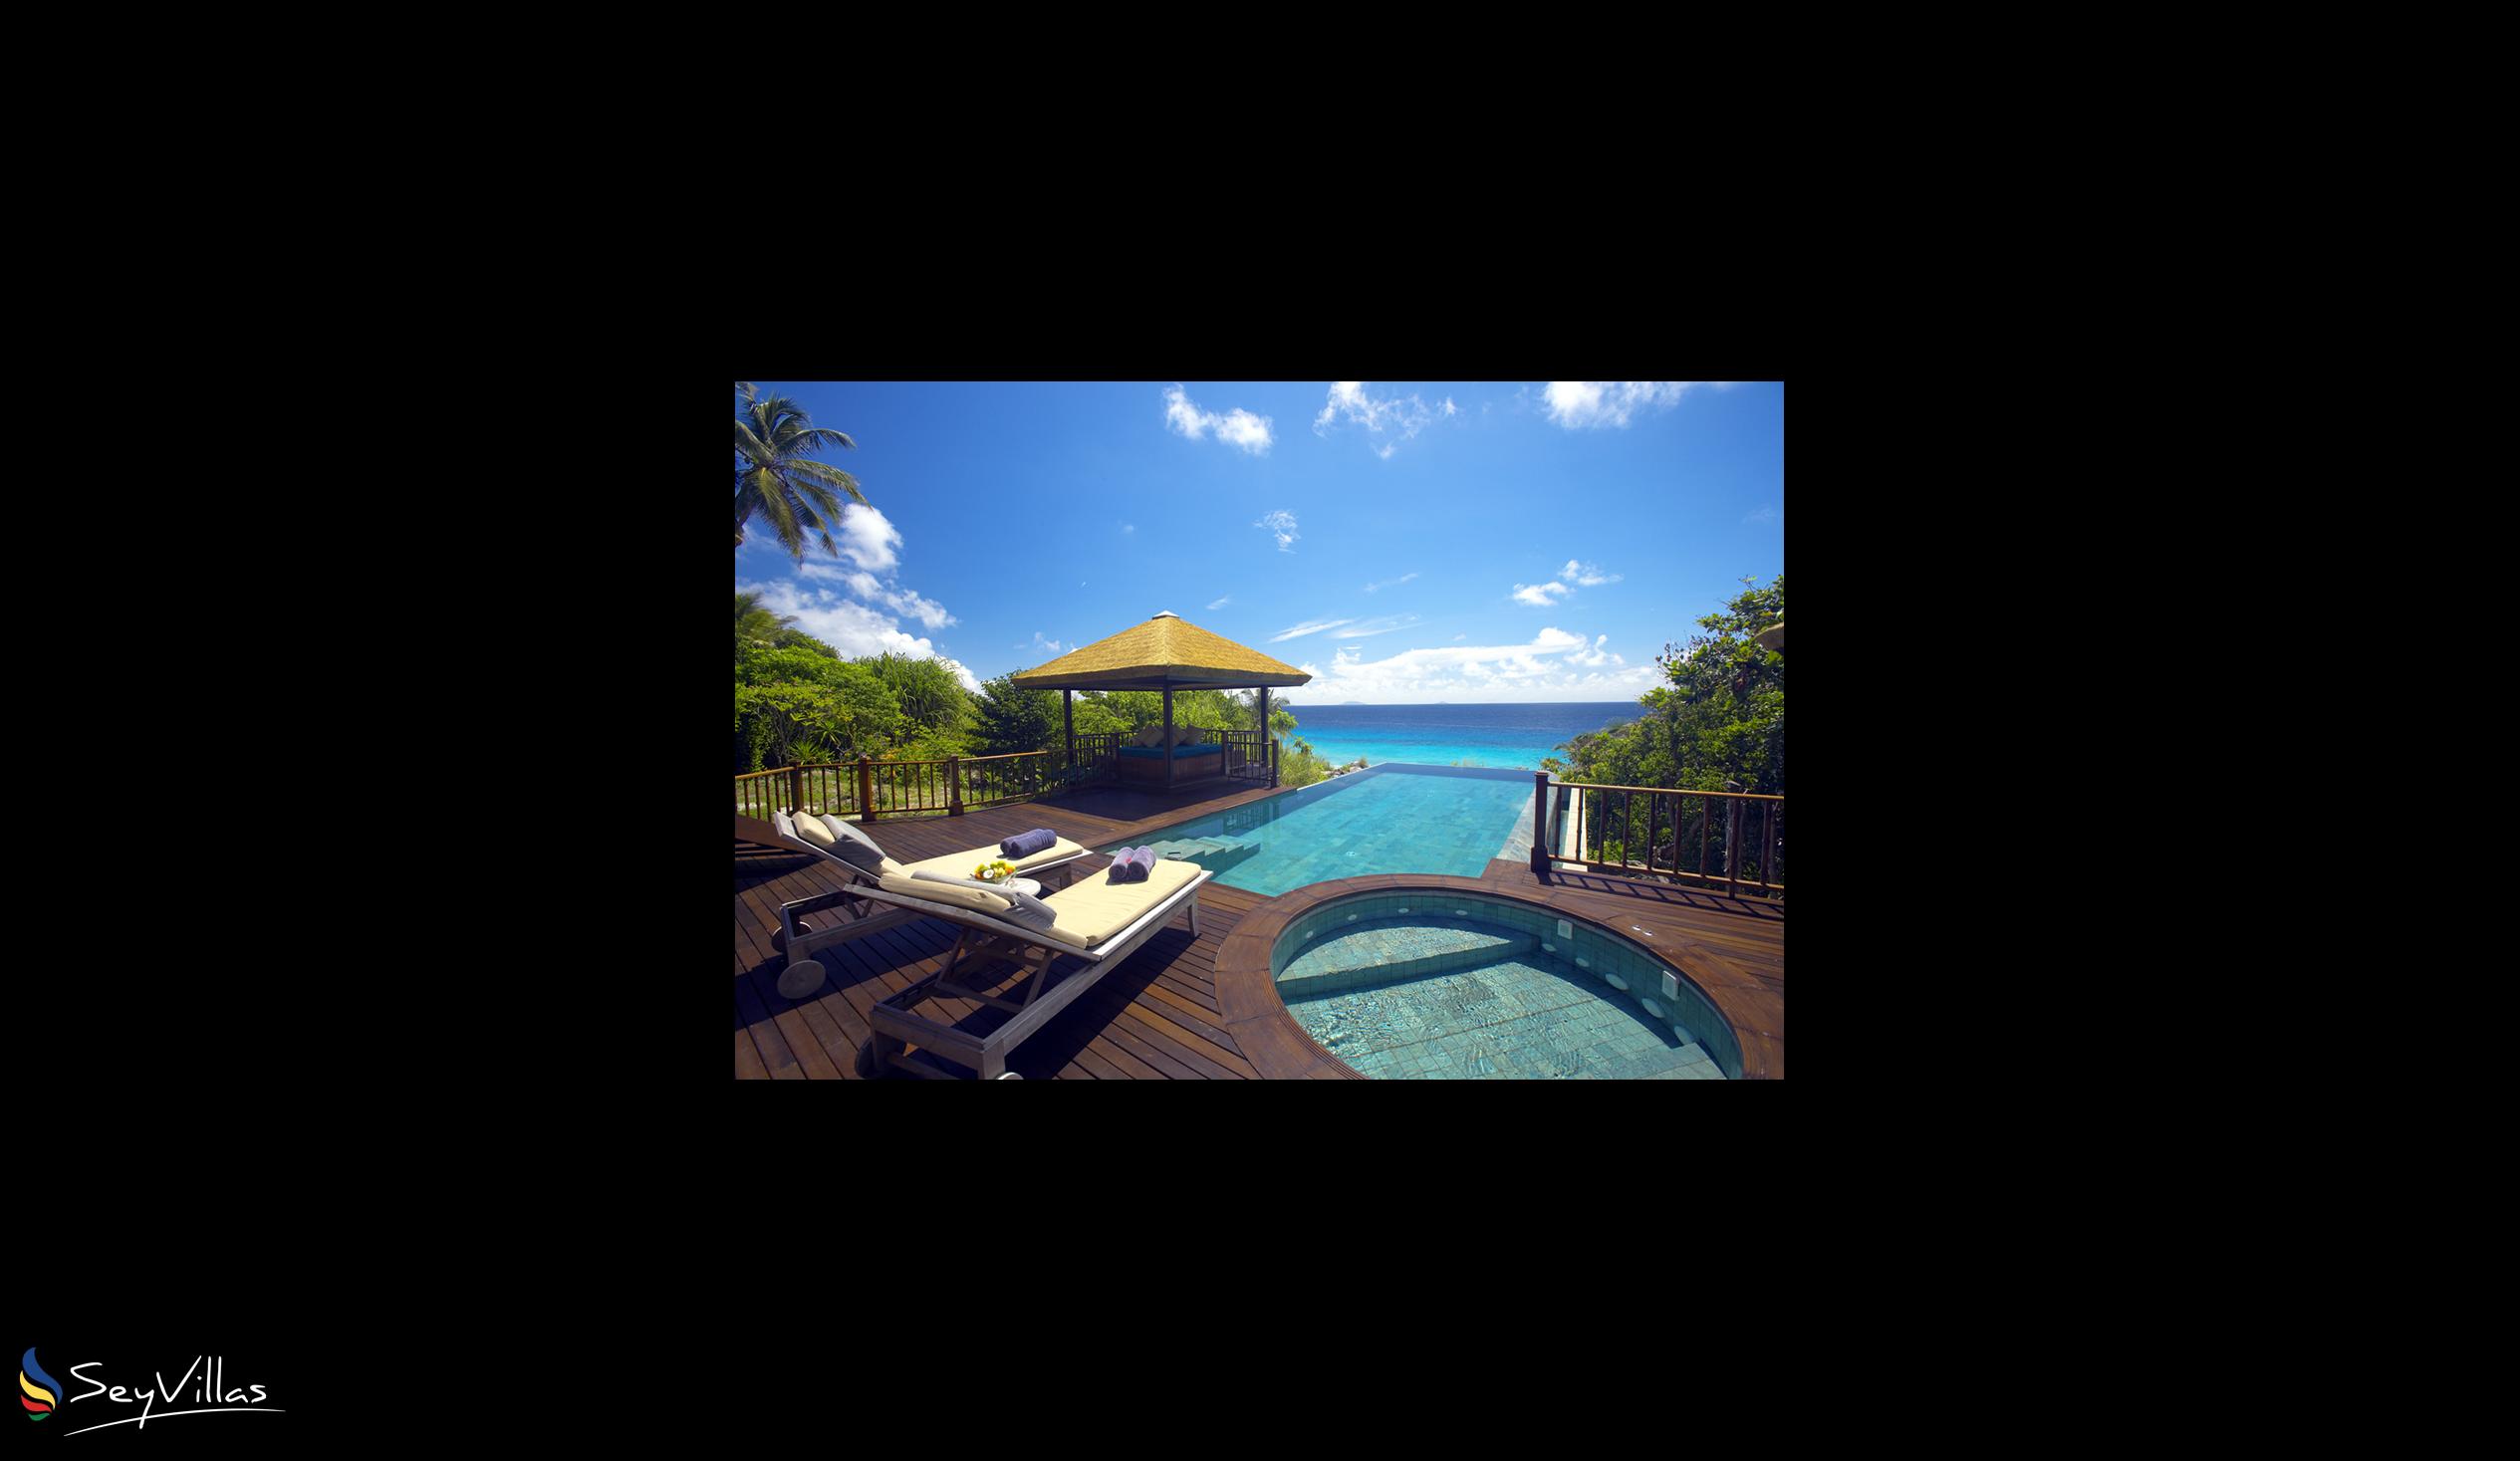 Photo 48: Fregate Island Private - Private Pool Villa - Fregate Island (Seychelles)